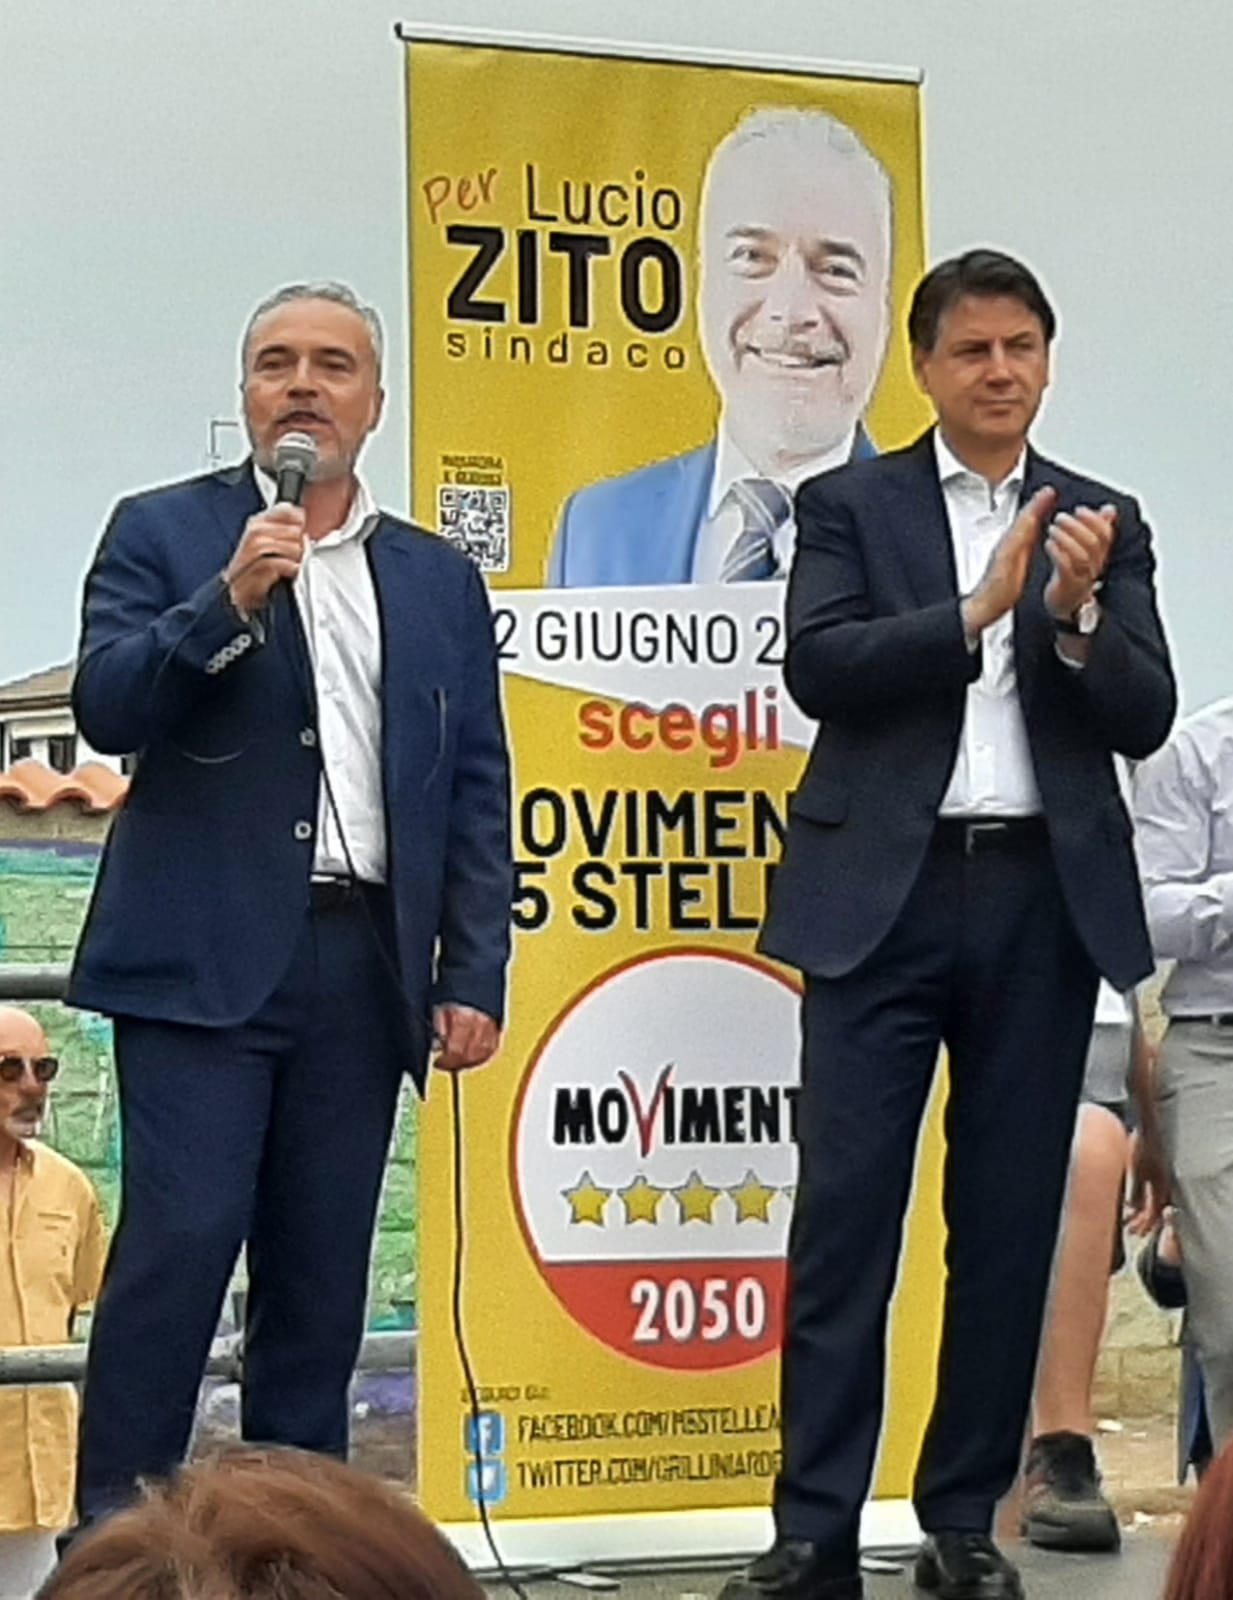 Conte ad Ardea per Lucio Zito sindaco: “Ha un progetto politico forte per la qualità di vita dei cittadini”